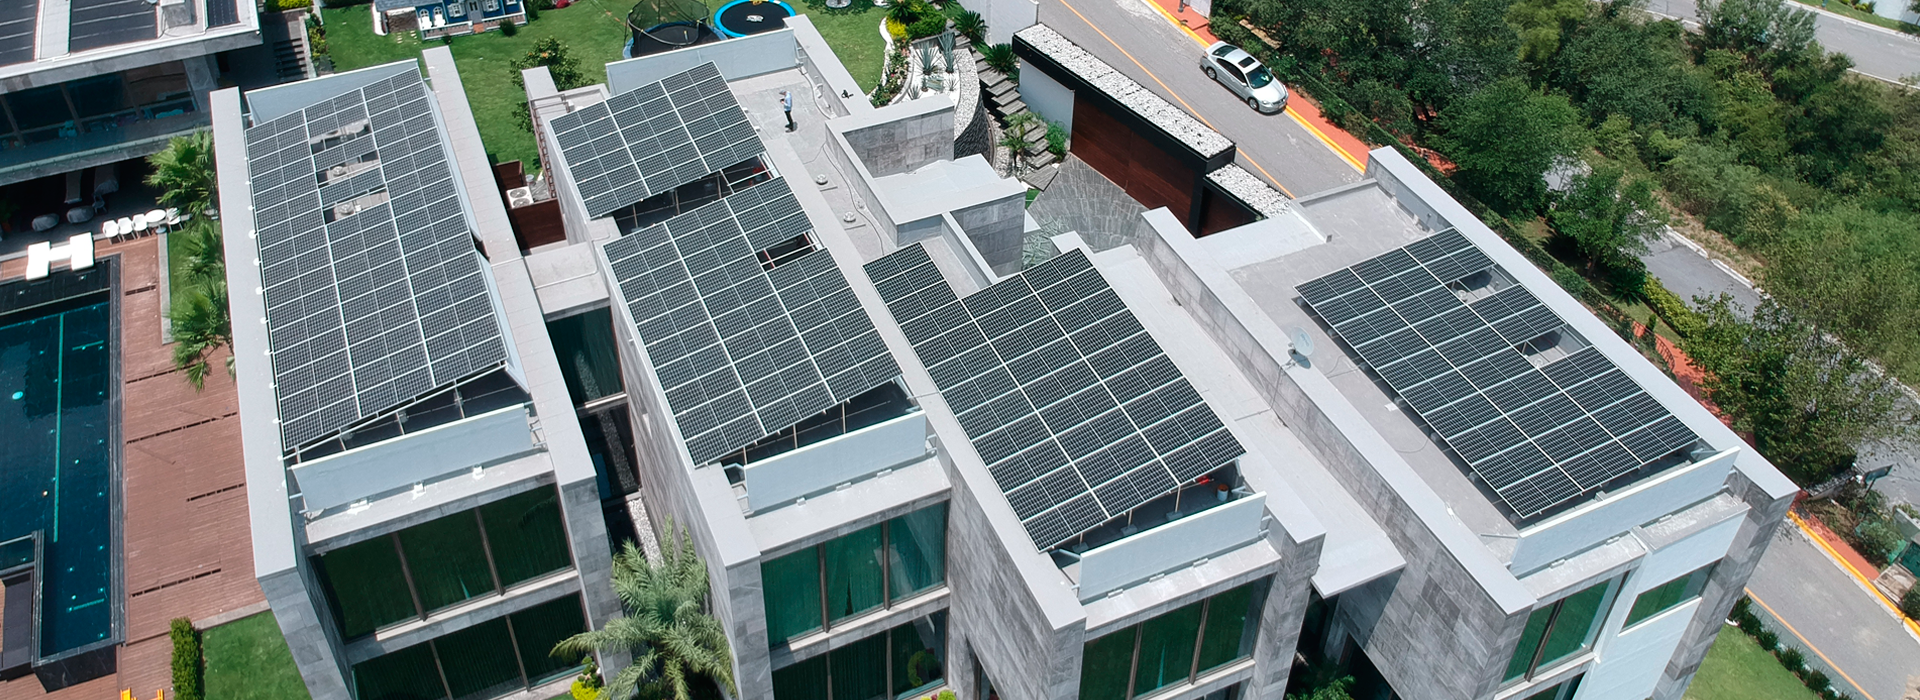 Energía solar para casas en México